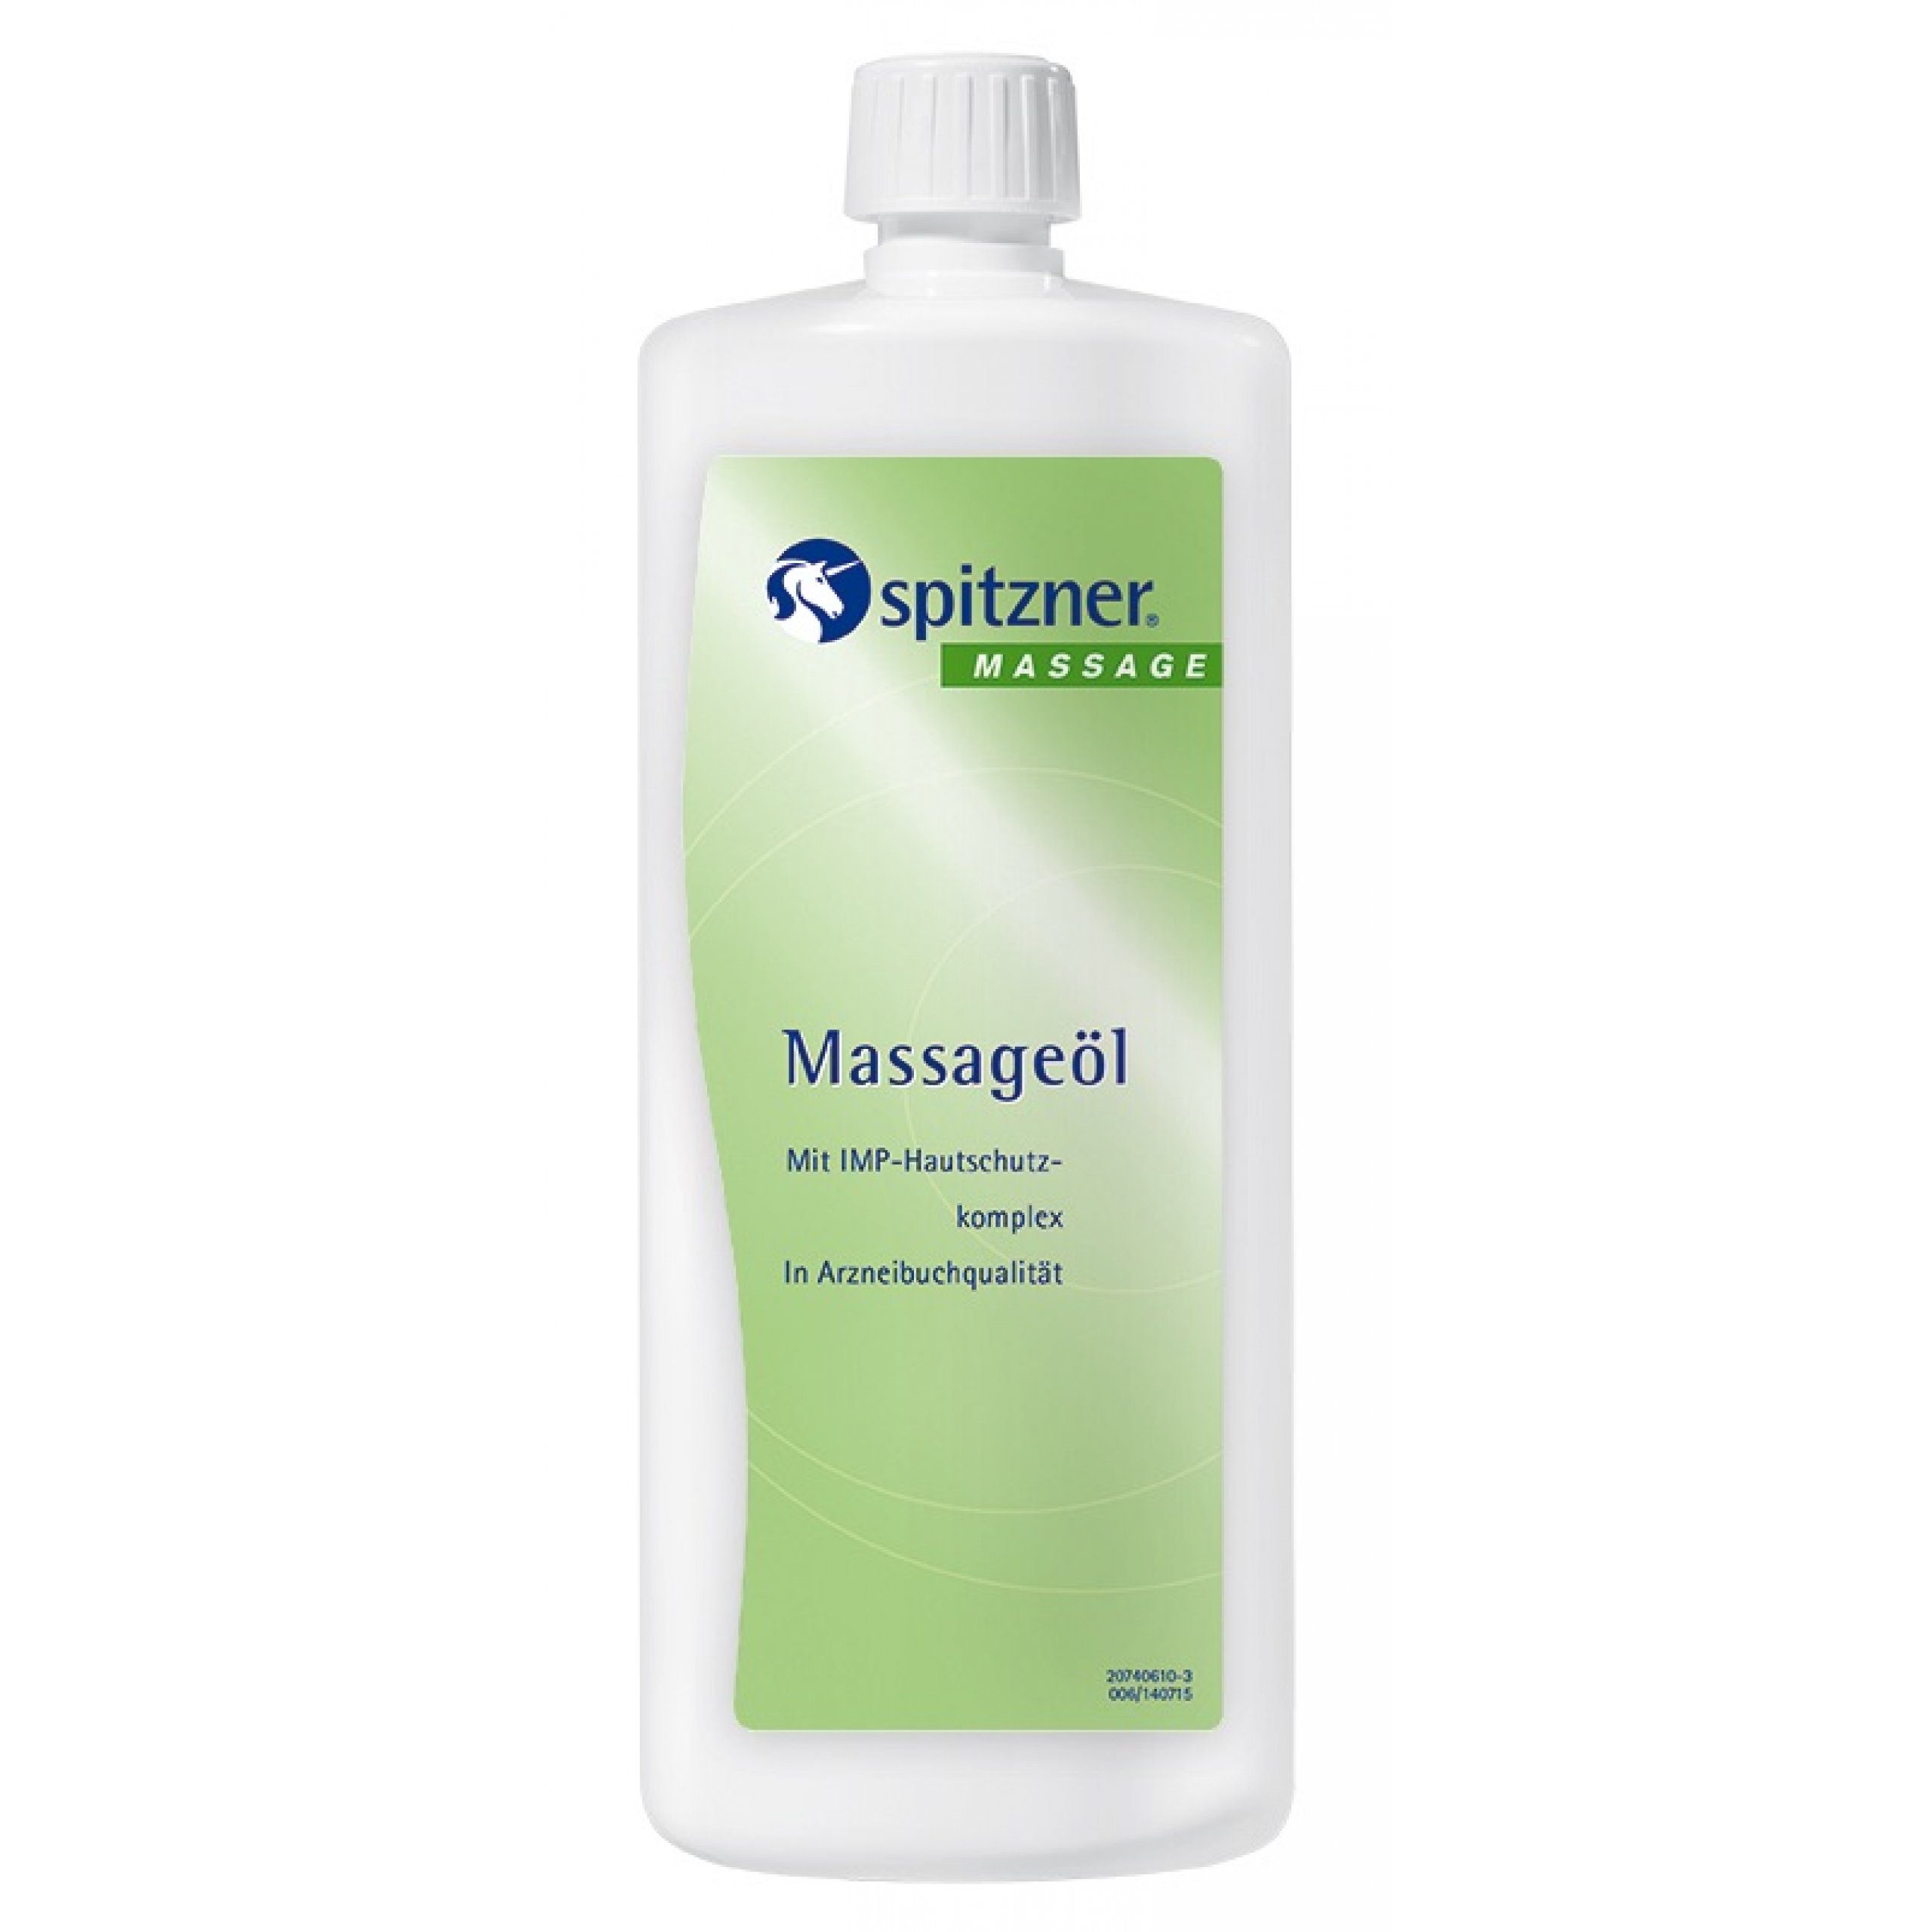 Spitzner Massageöl Spitzner Massageöl 1 Liter (1000 ml) pflegendes Massage-Öl mit